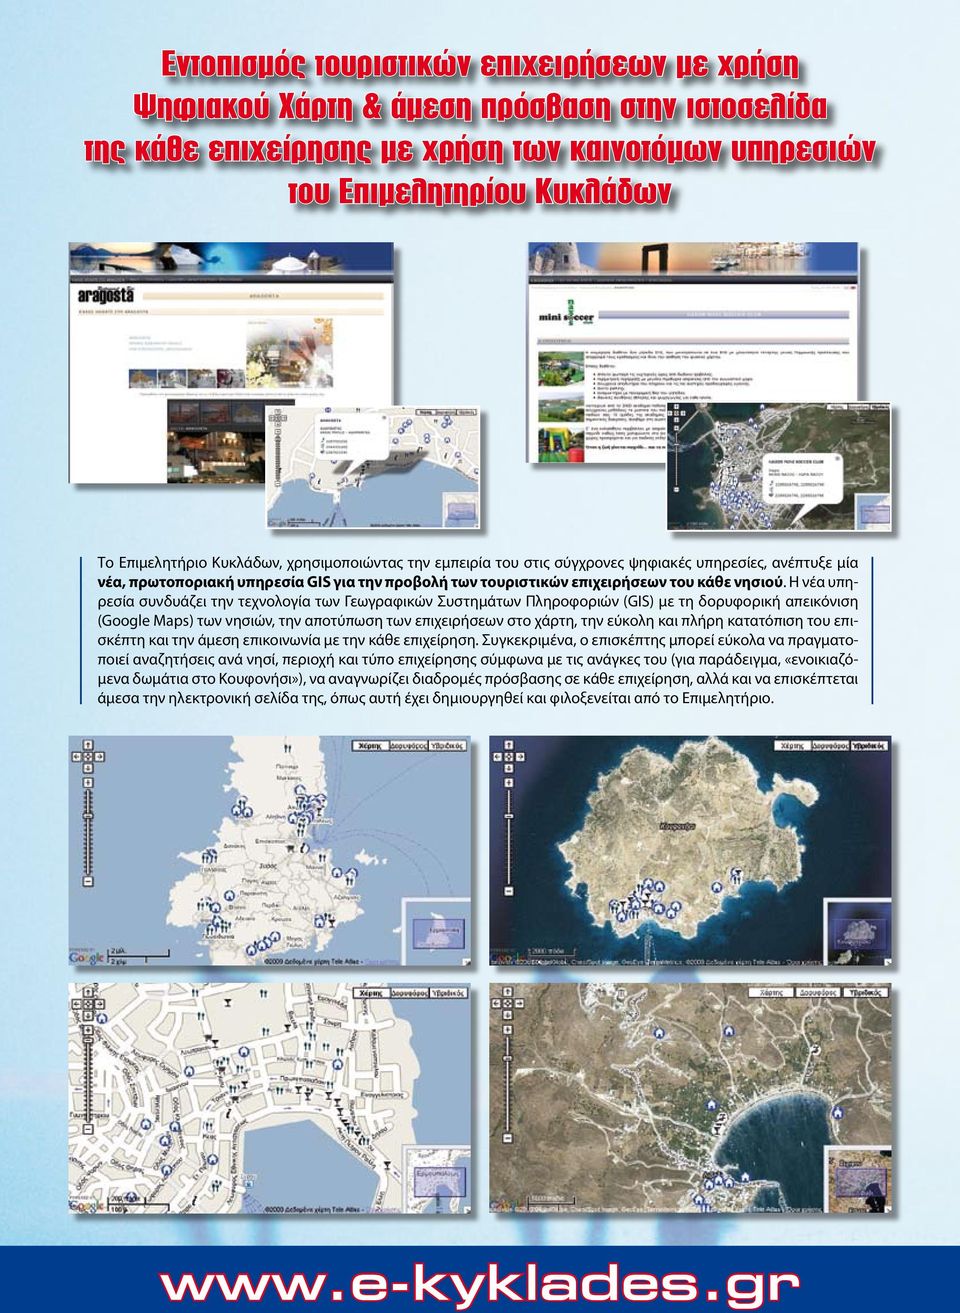 Η νέα υπηρεσία συνδυάζει την τεχνολογία των Γεωγραφικών Συστημάτων Πληροφοριών (GIS) με τη δορυφορική απεικόνιση (Google Maps) των νησιών, την αποτύπωση των επιχειρήσεων στο χάρτη, την εύκολη και